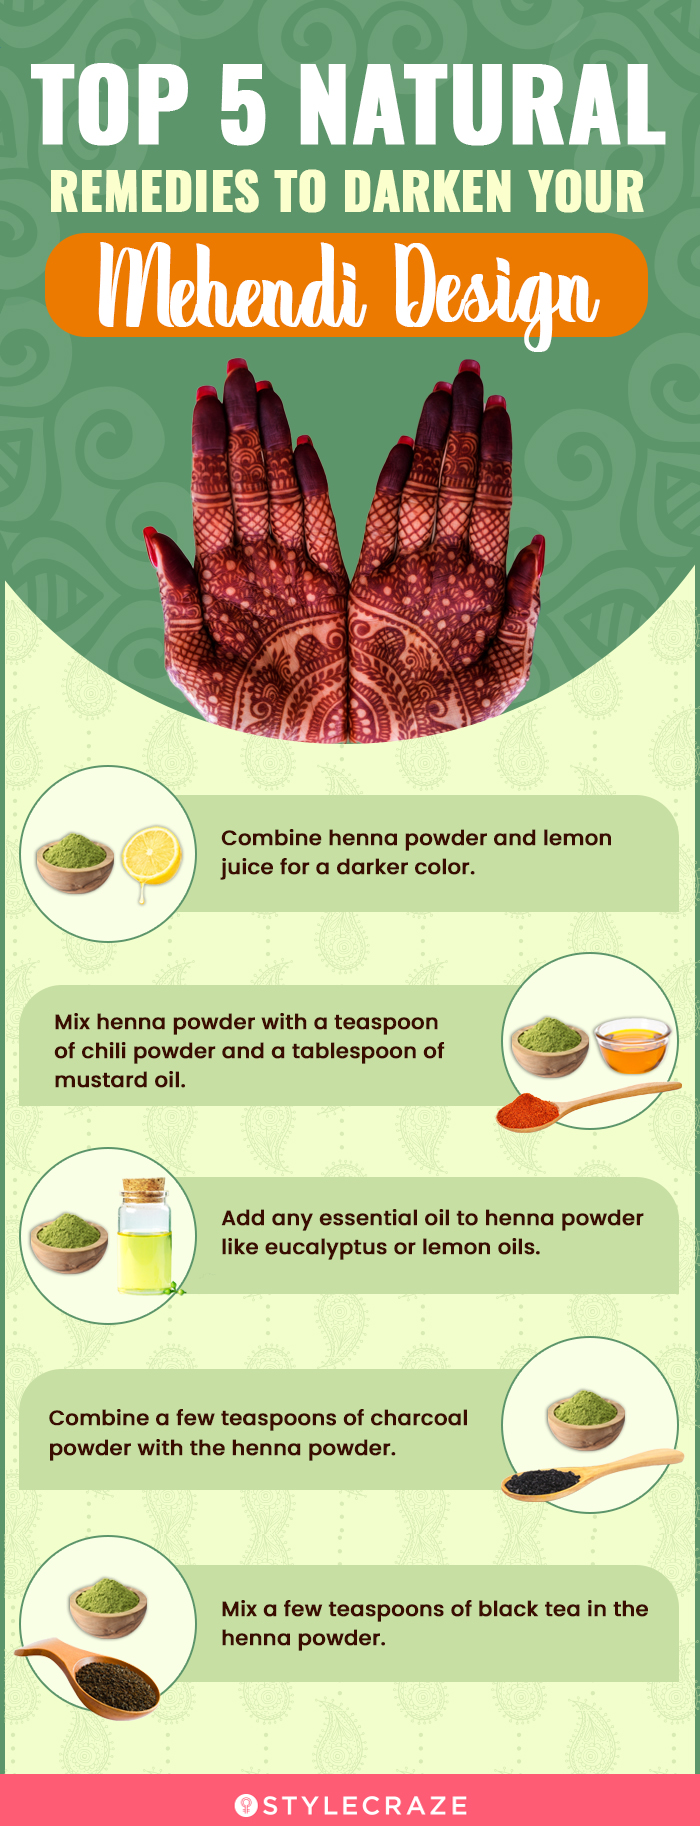 top 5 natural remedies to darken your mehendi design (infographic)